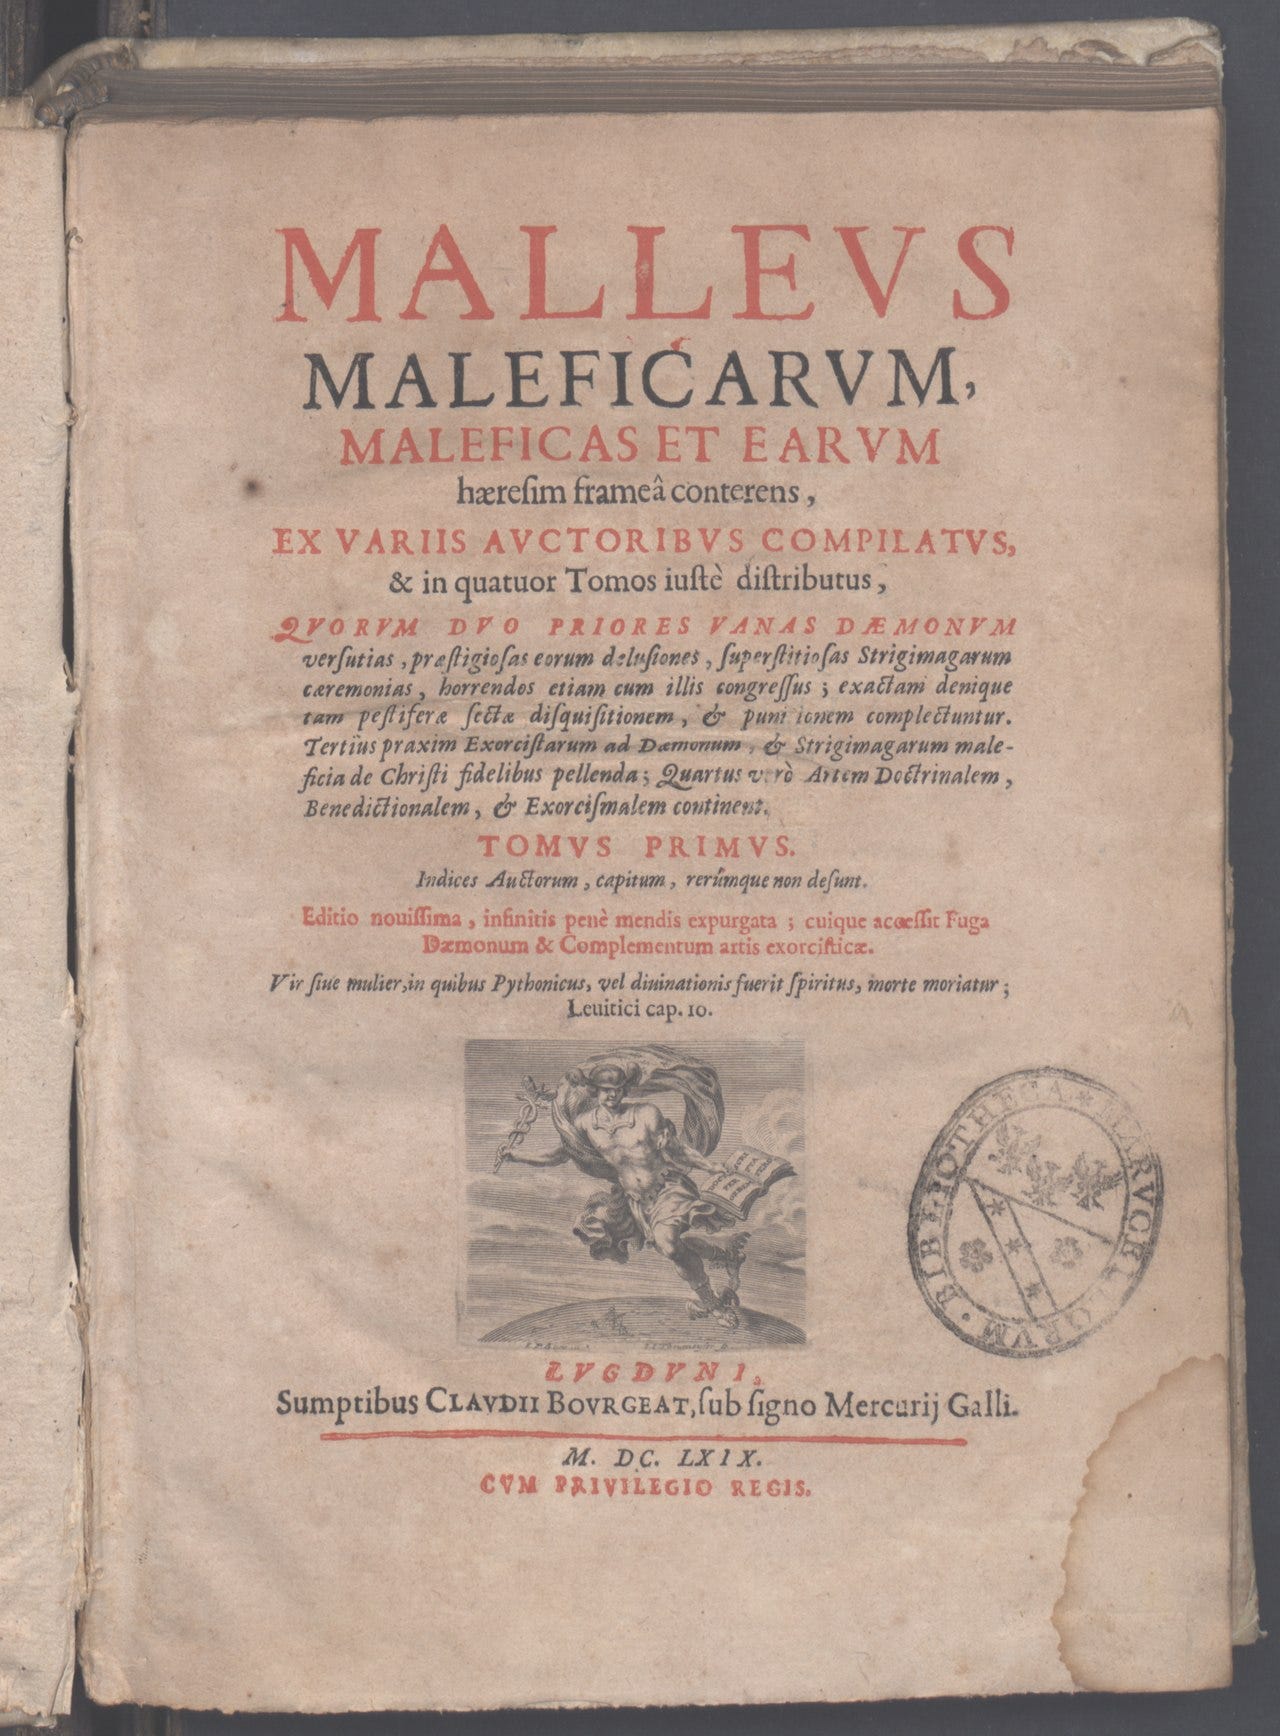 Capa do Malleus impresso com letras romanas, de 1669